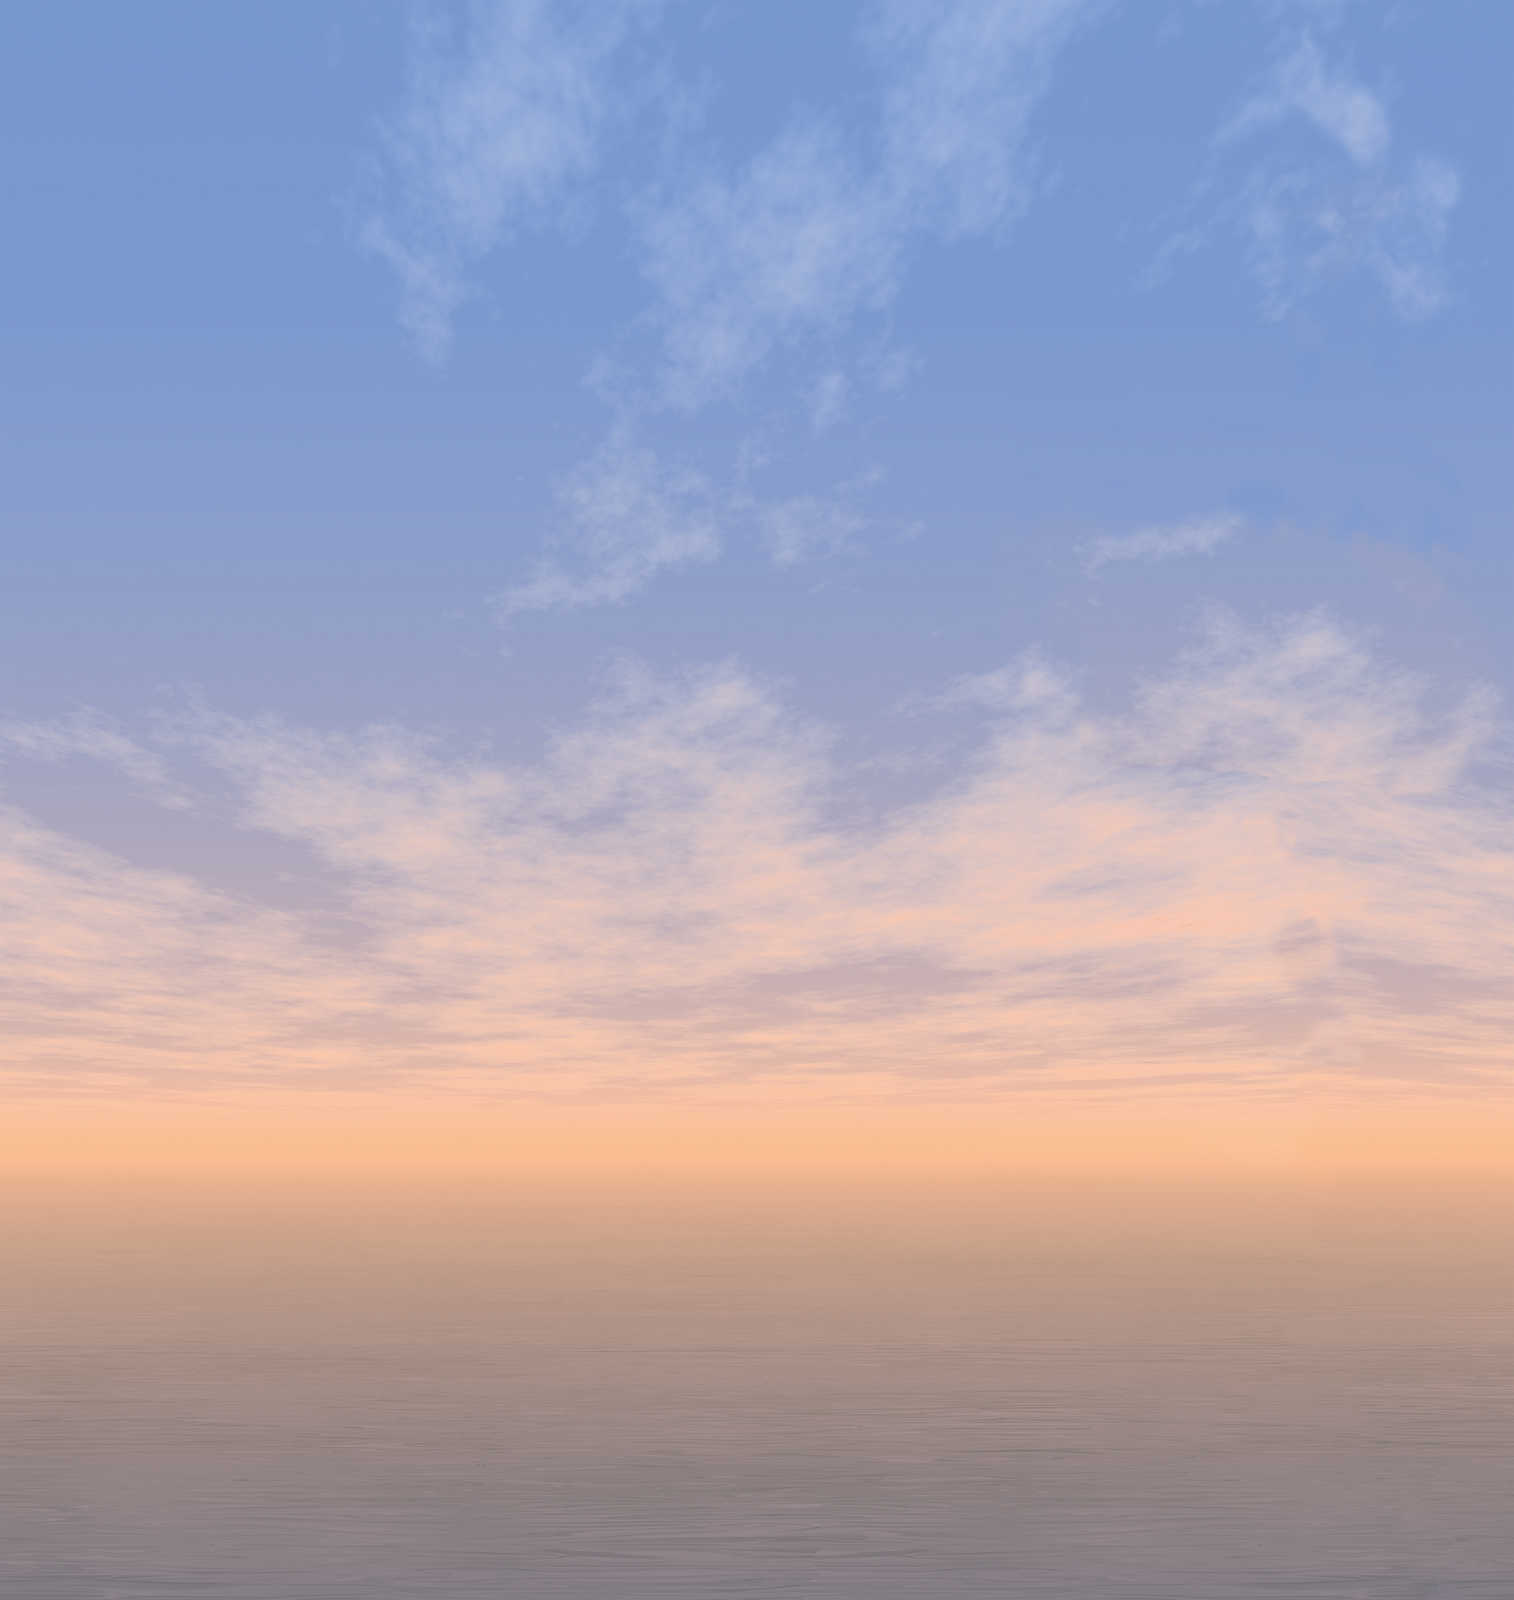             Papel pintado marino con nubes al atardecer - Azul, Blanco, Gris
        